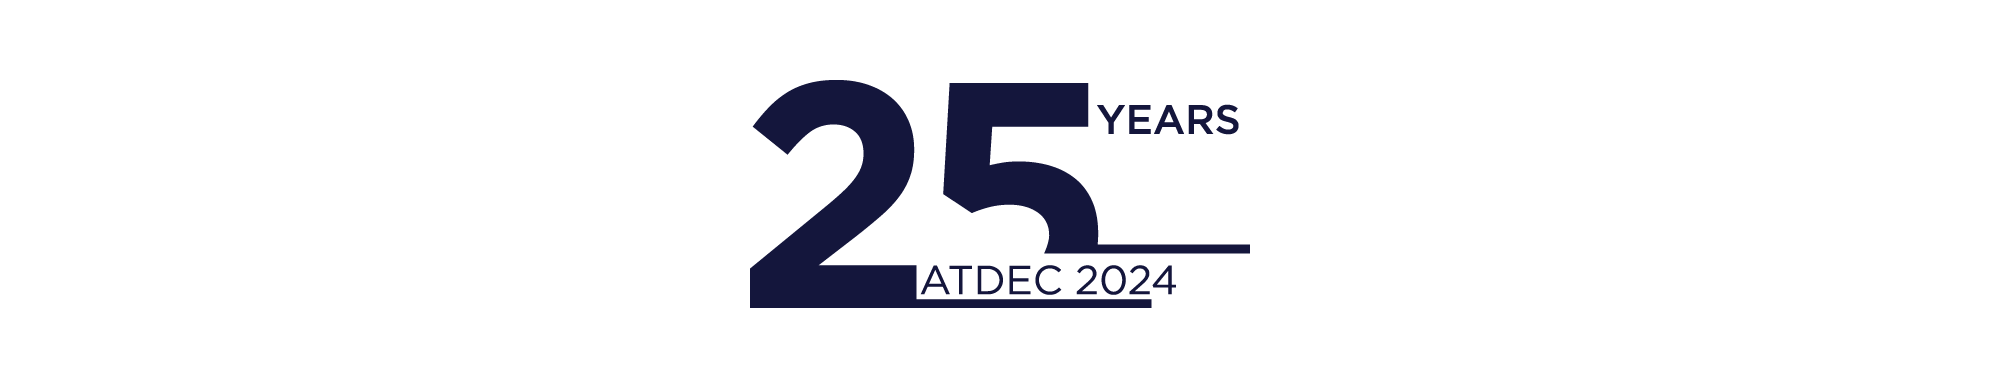 Atdec celebrates 25 years